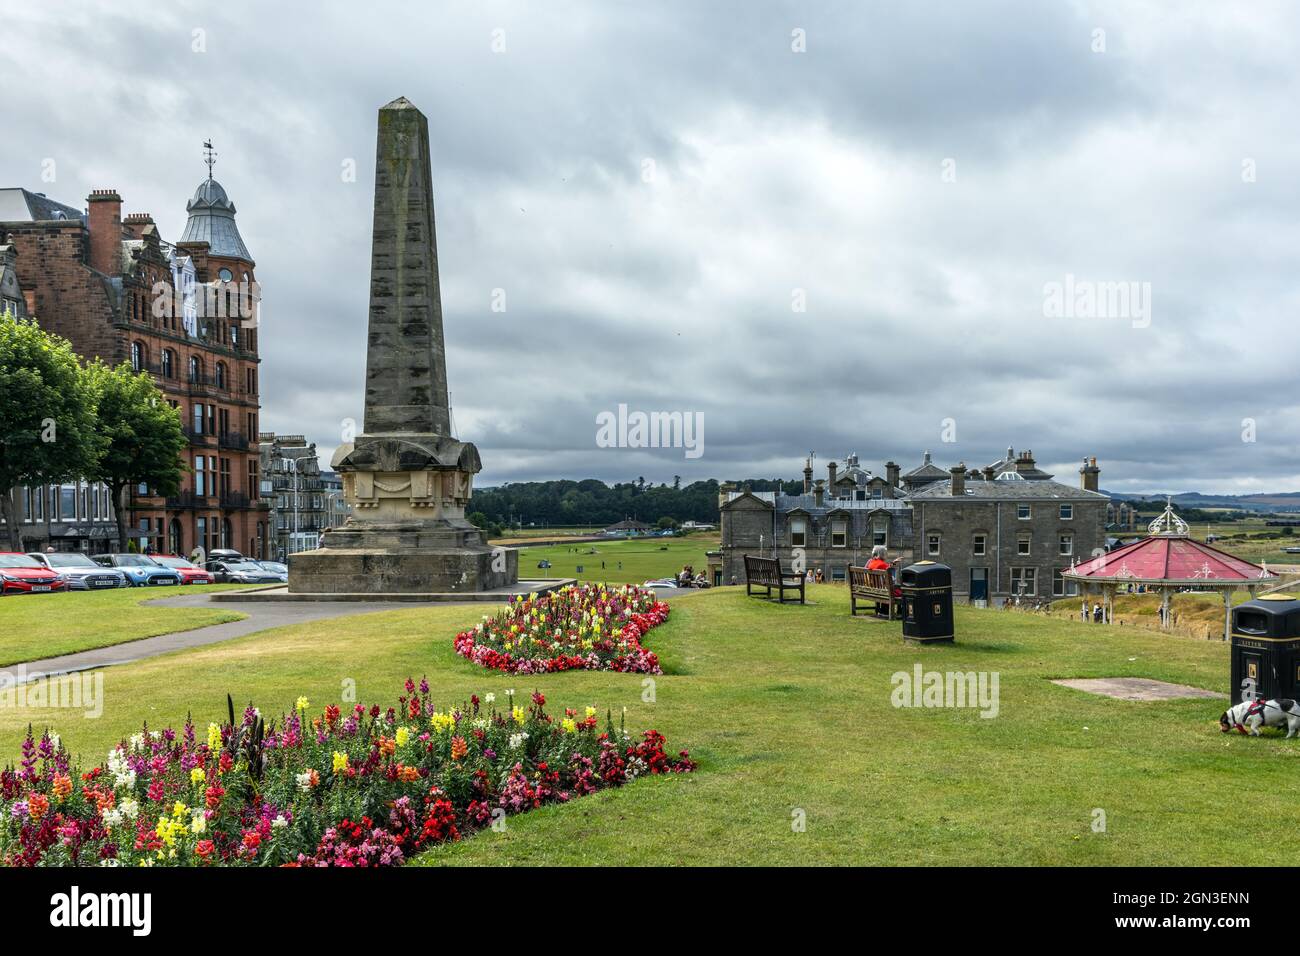 Das Martyrs’ Memorial in der Nähe des Old Course in St Andrews ist eine Hommage an die während der schottischen Reformation Getöteten gegen die katholische Kirche. Stockfoto